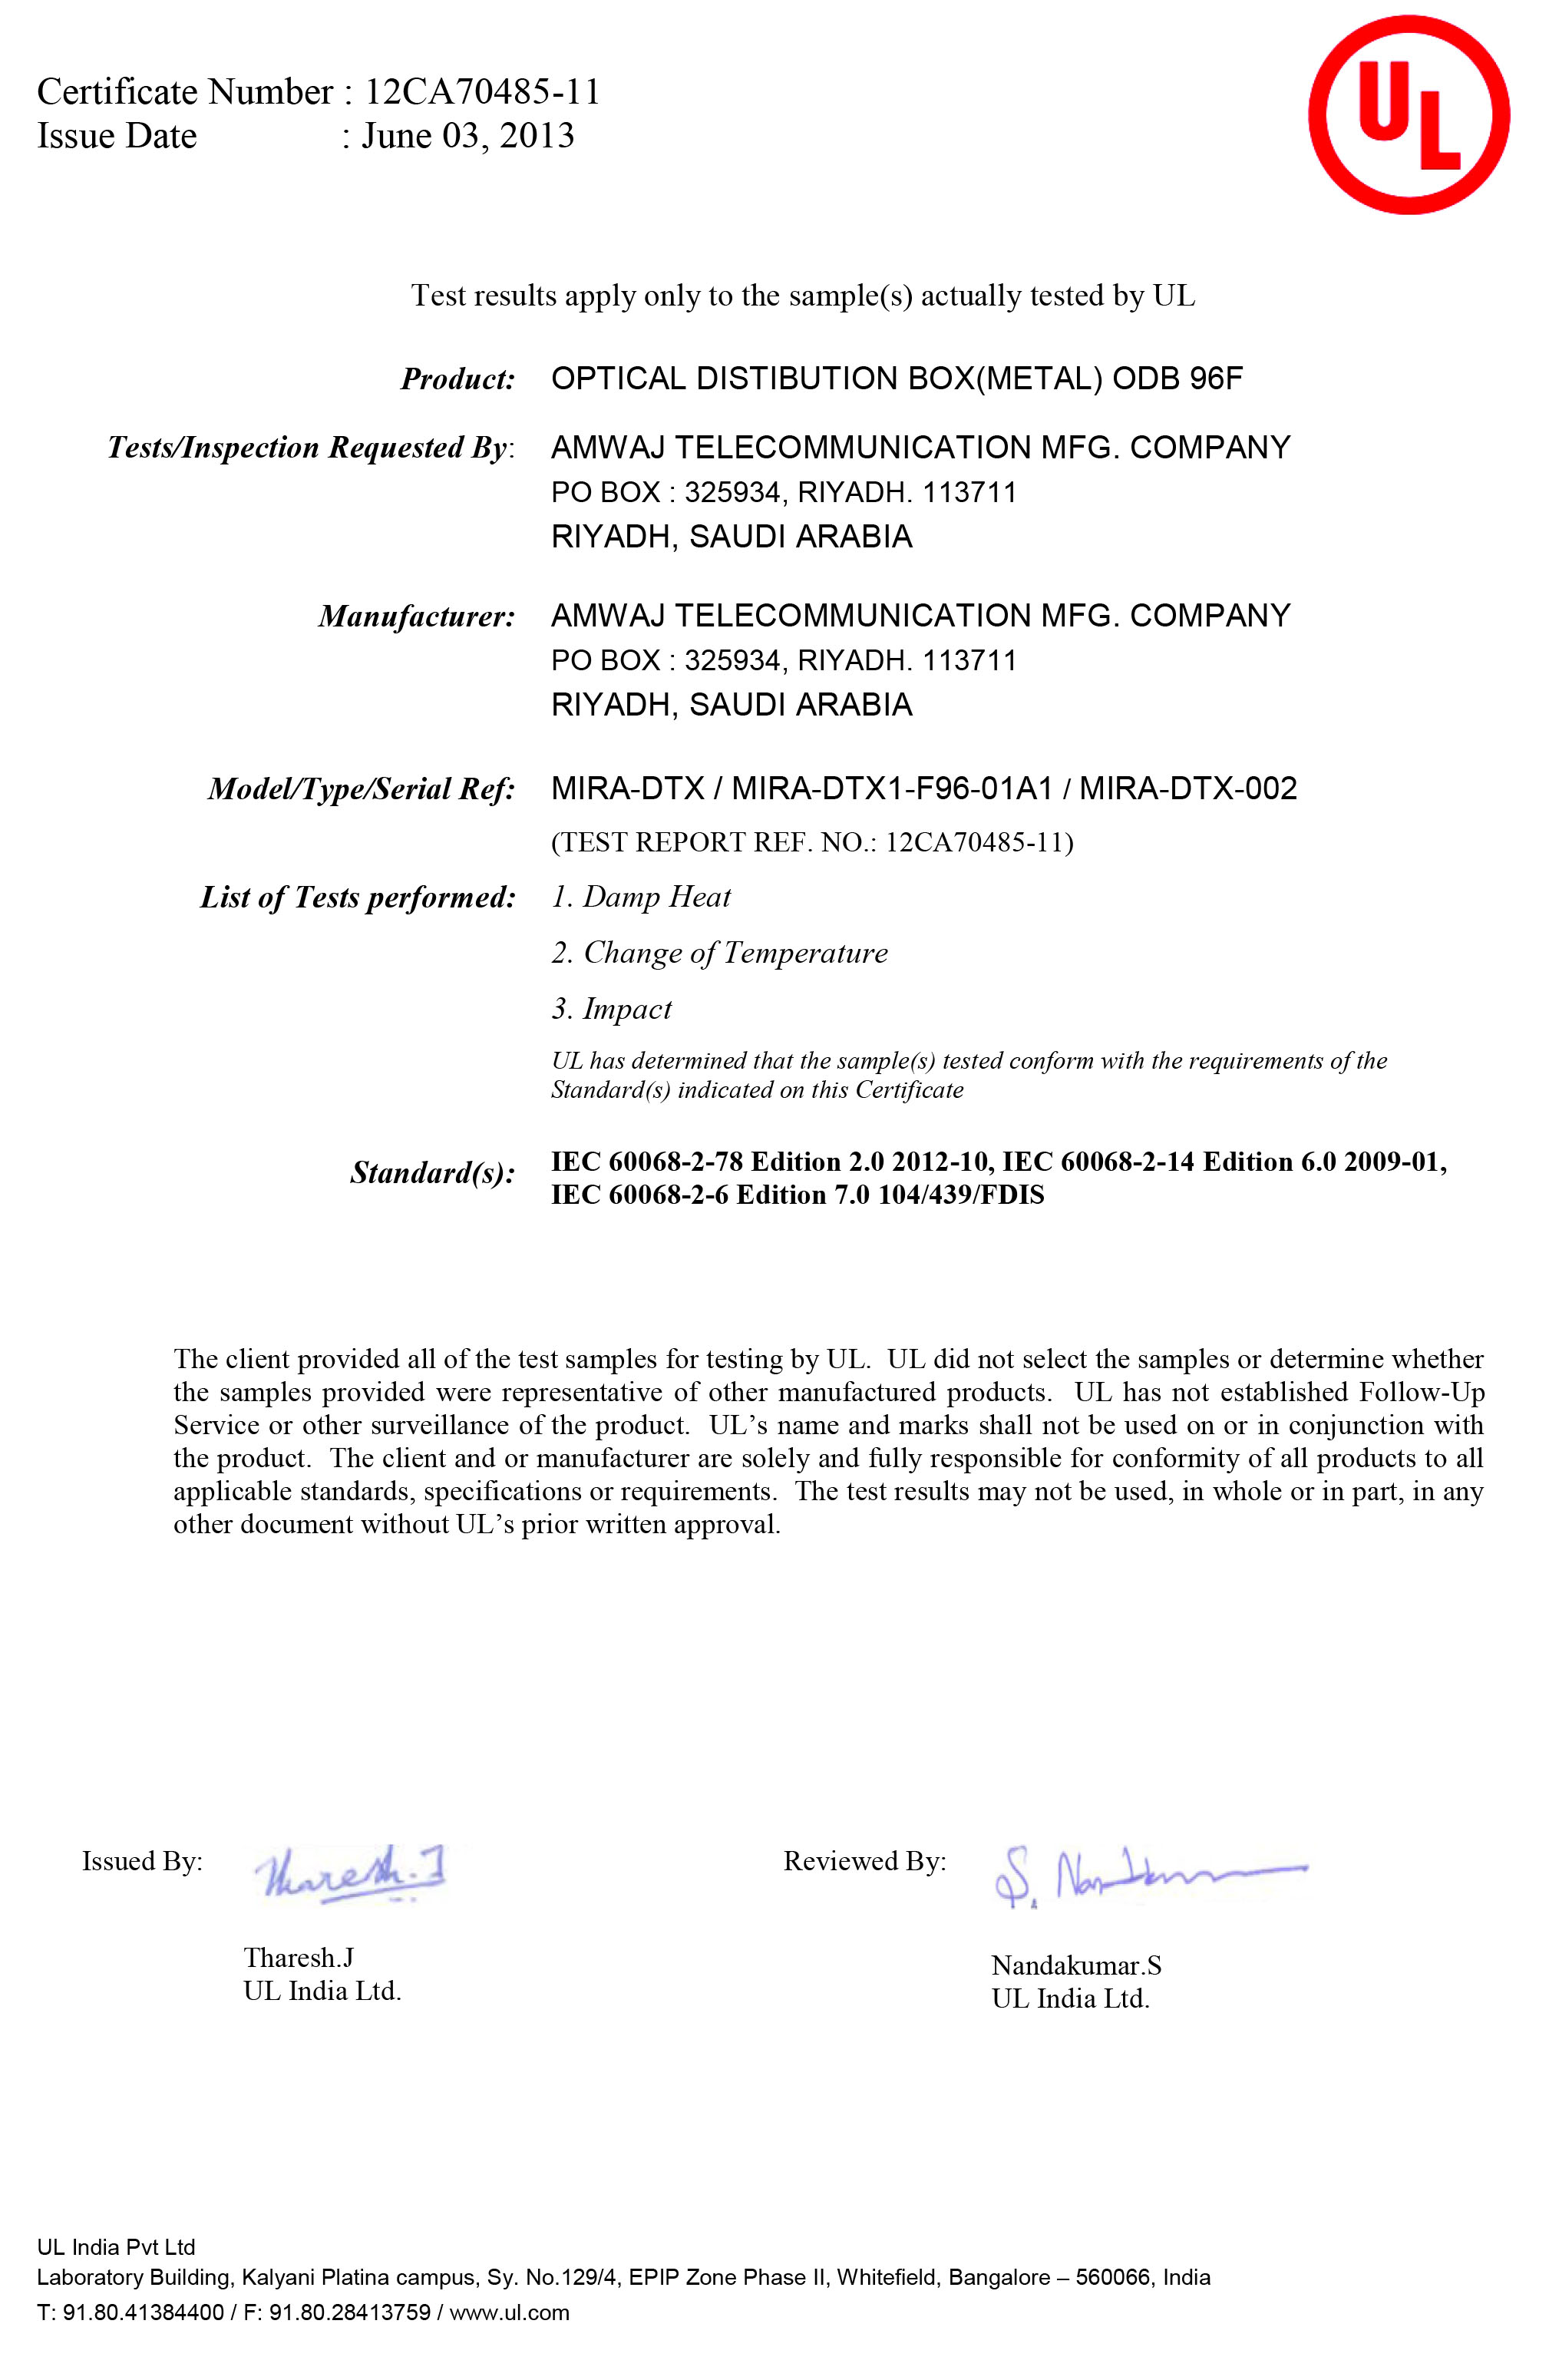 UL Certificate for ODB 96F(Metal)